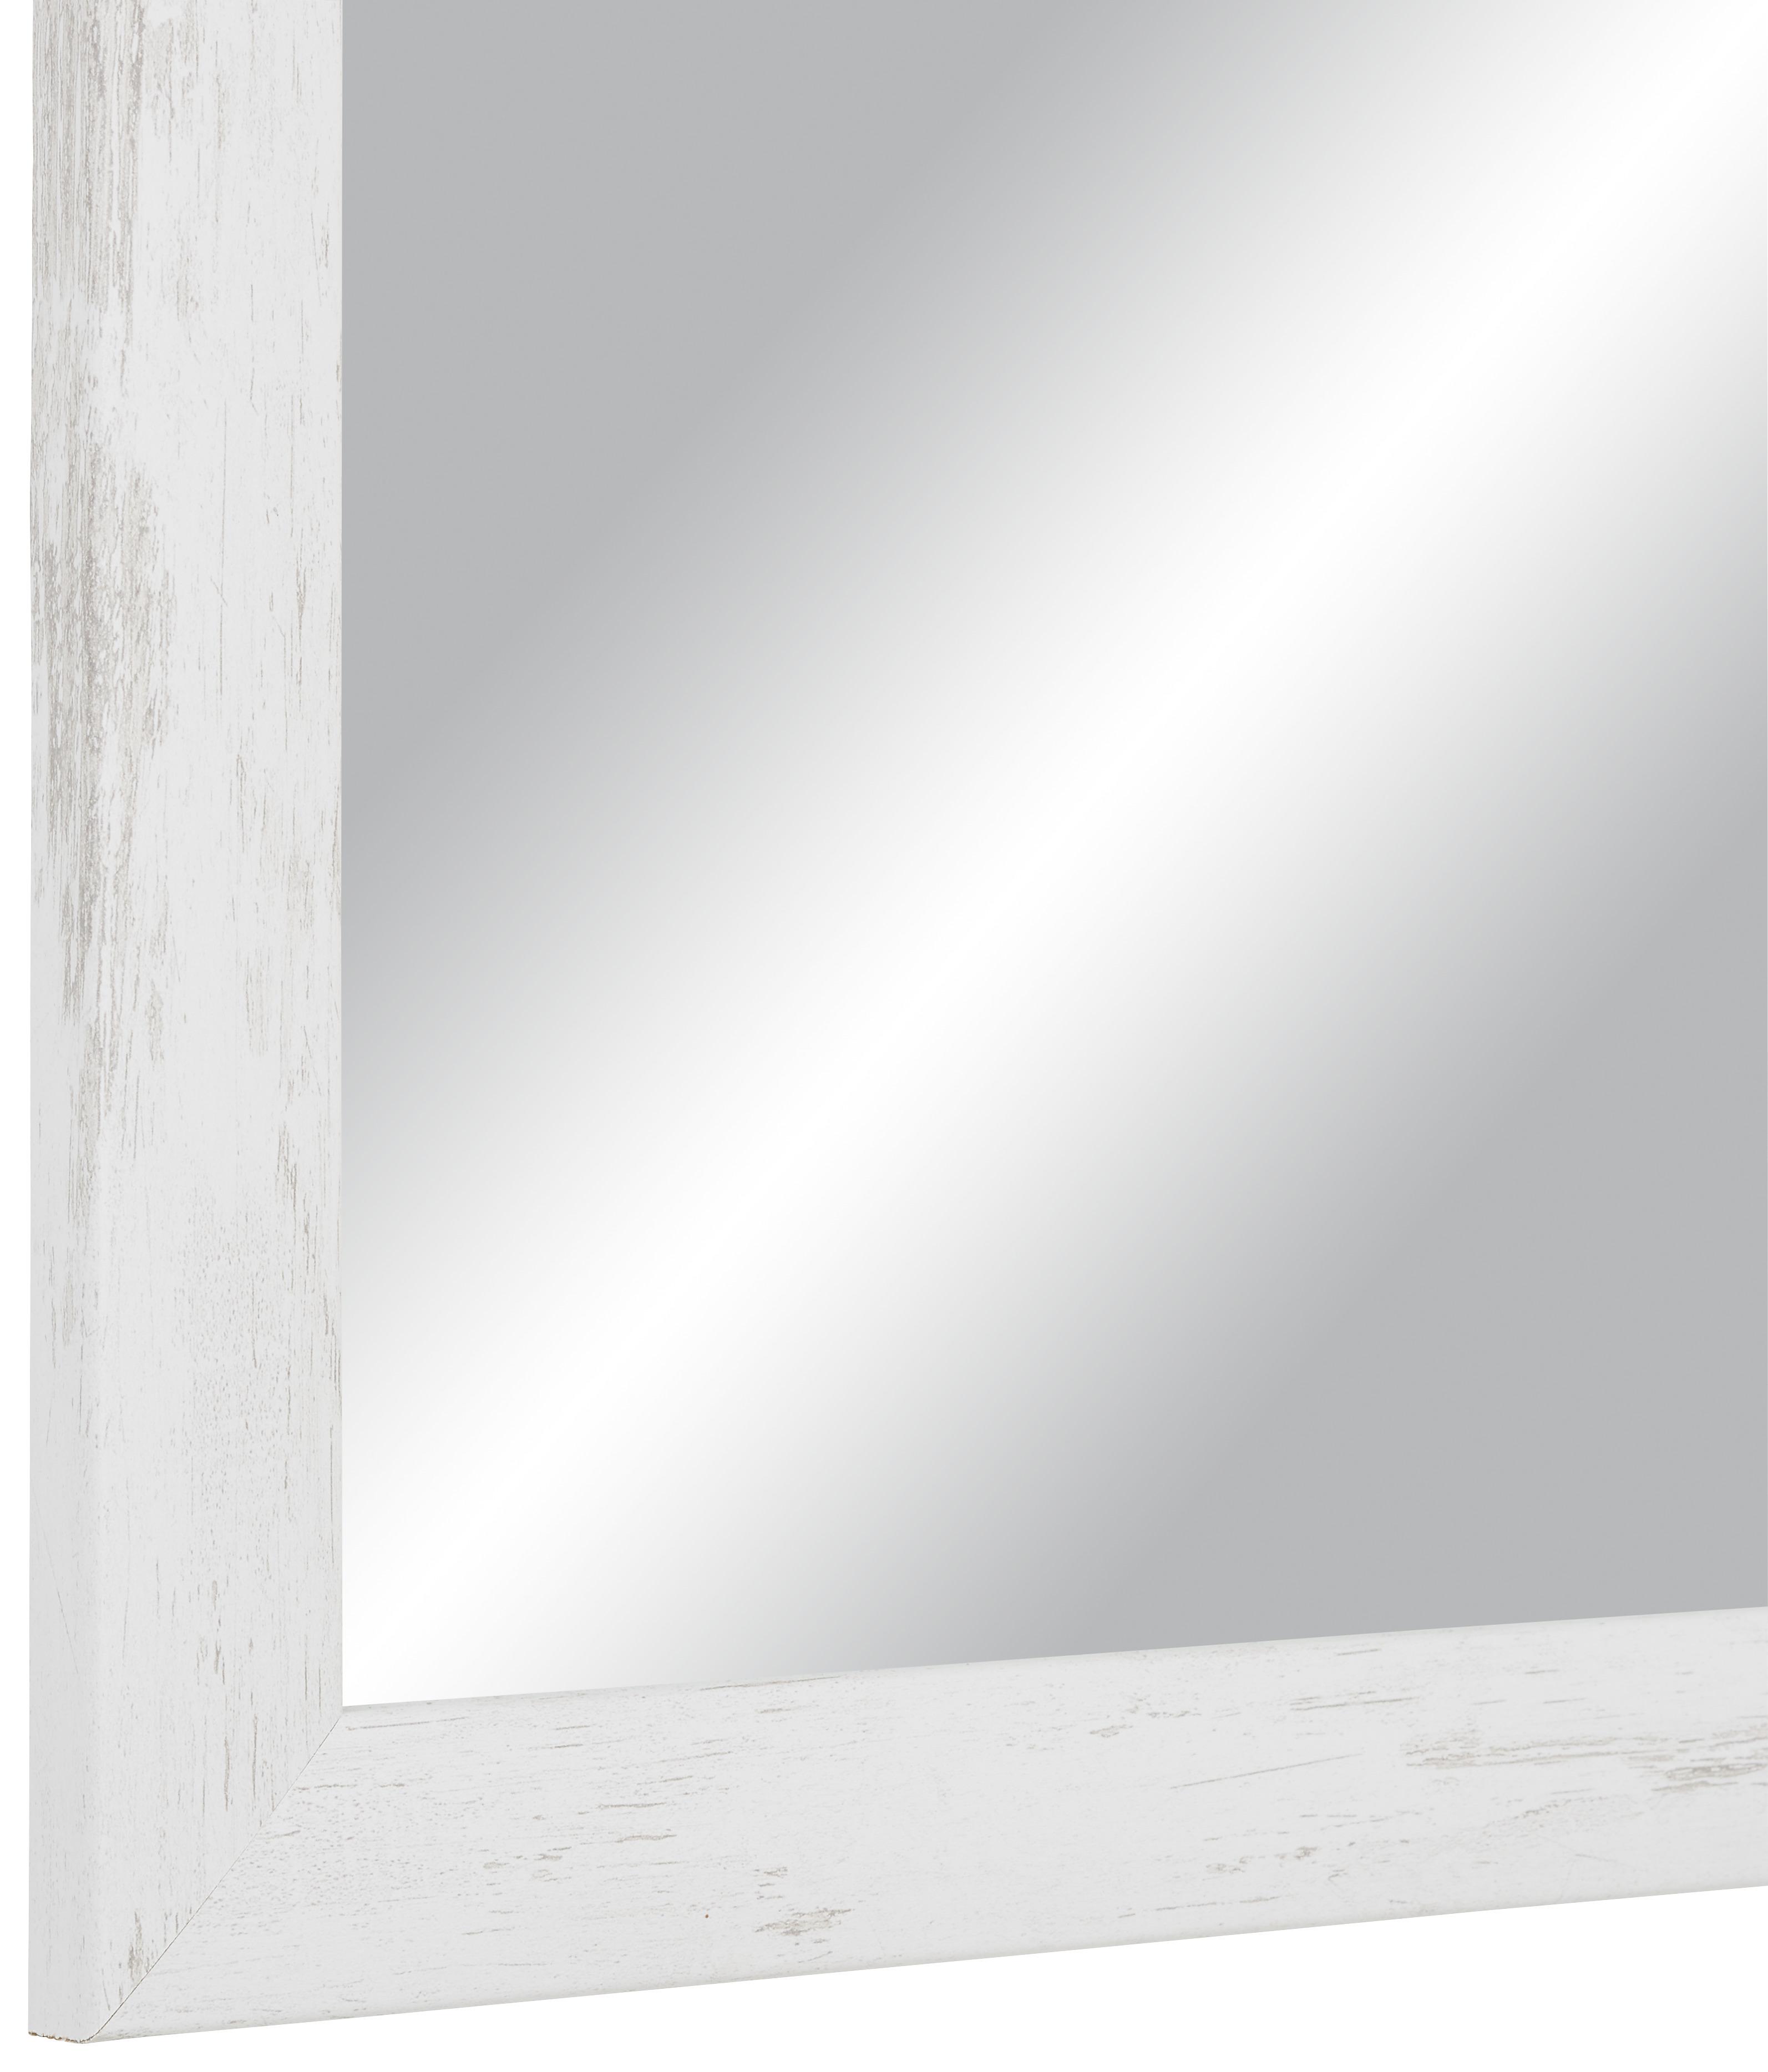 Stensko Ogledalo Old-White-Heav - bela/rjava, Moderno, steklo/leseni material (50/70cm) - Modern Living